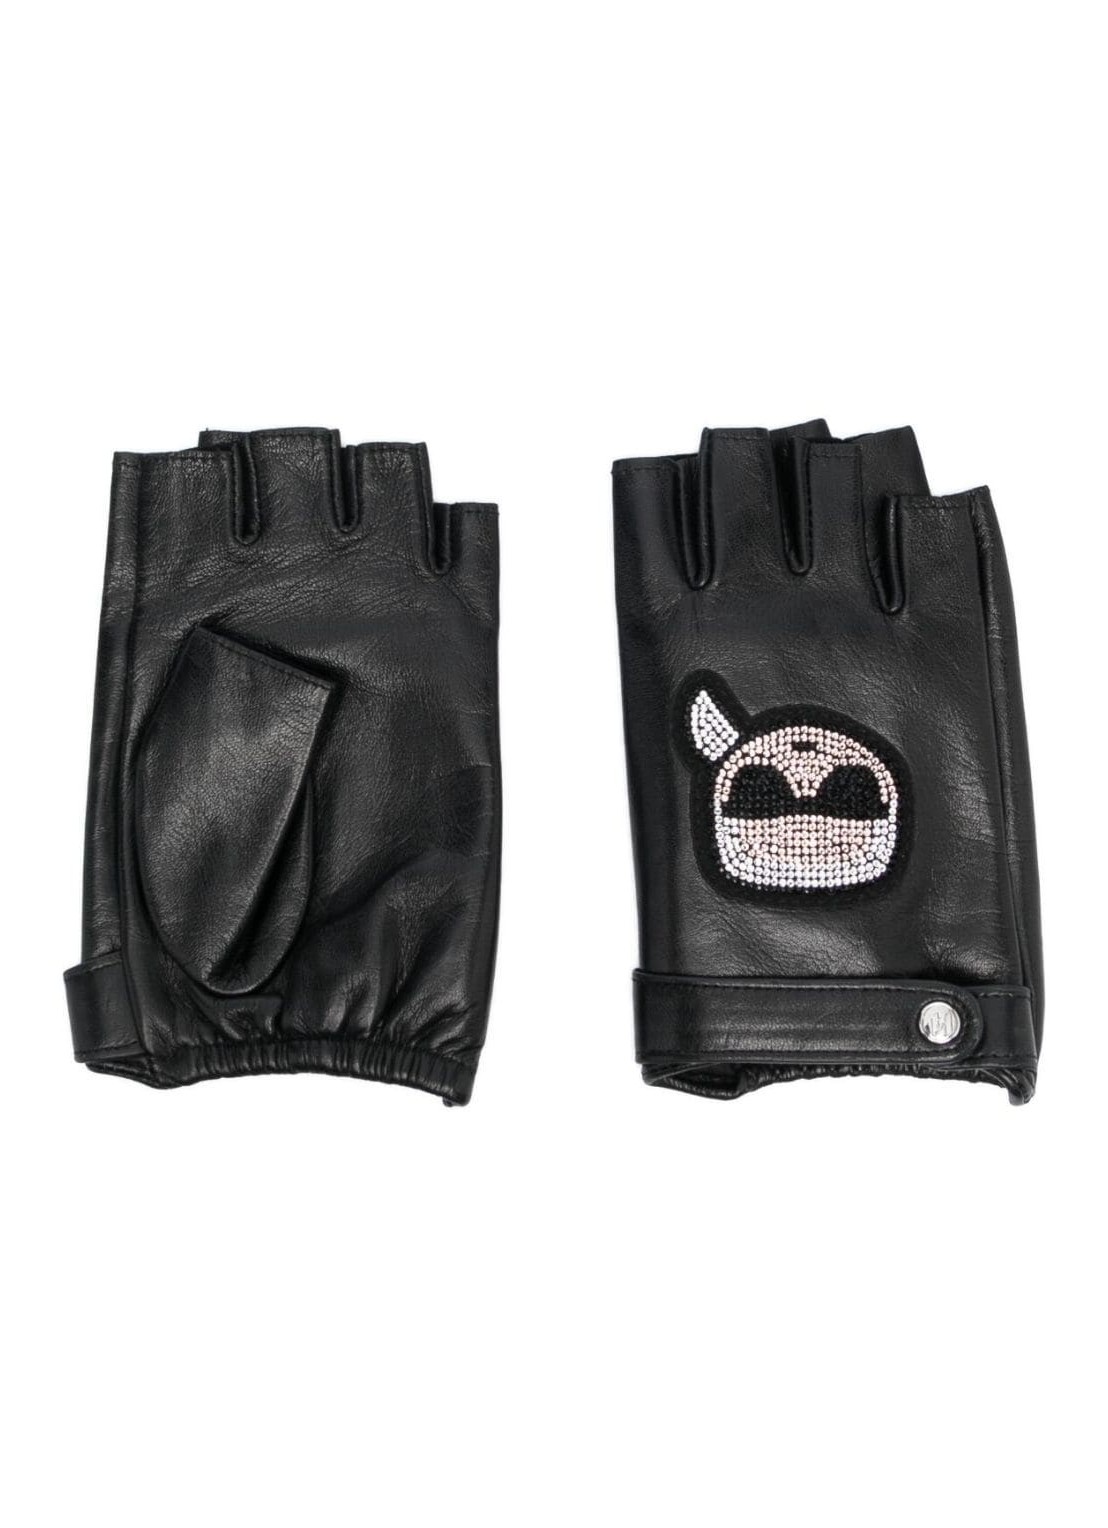 Guantes karl lagerfeld gloves woman k/ikonik 2.0 rhnstn fl glove 236w3603 a999 talla M
 